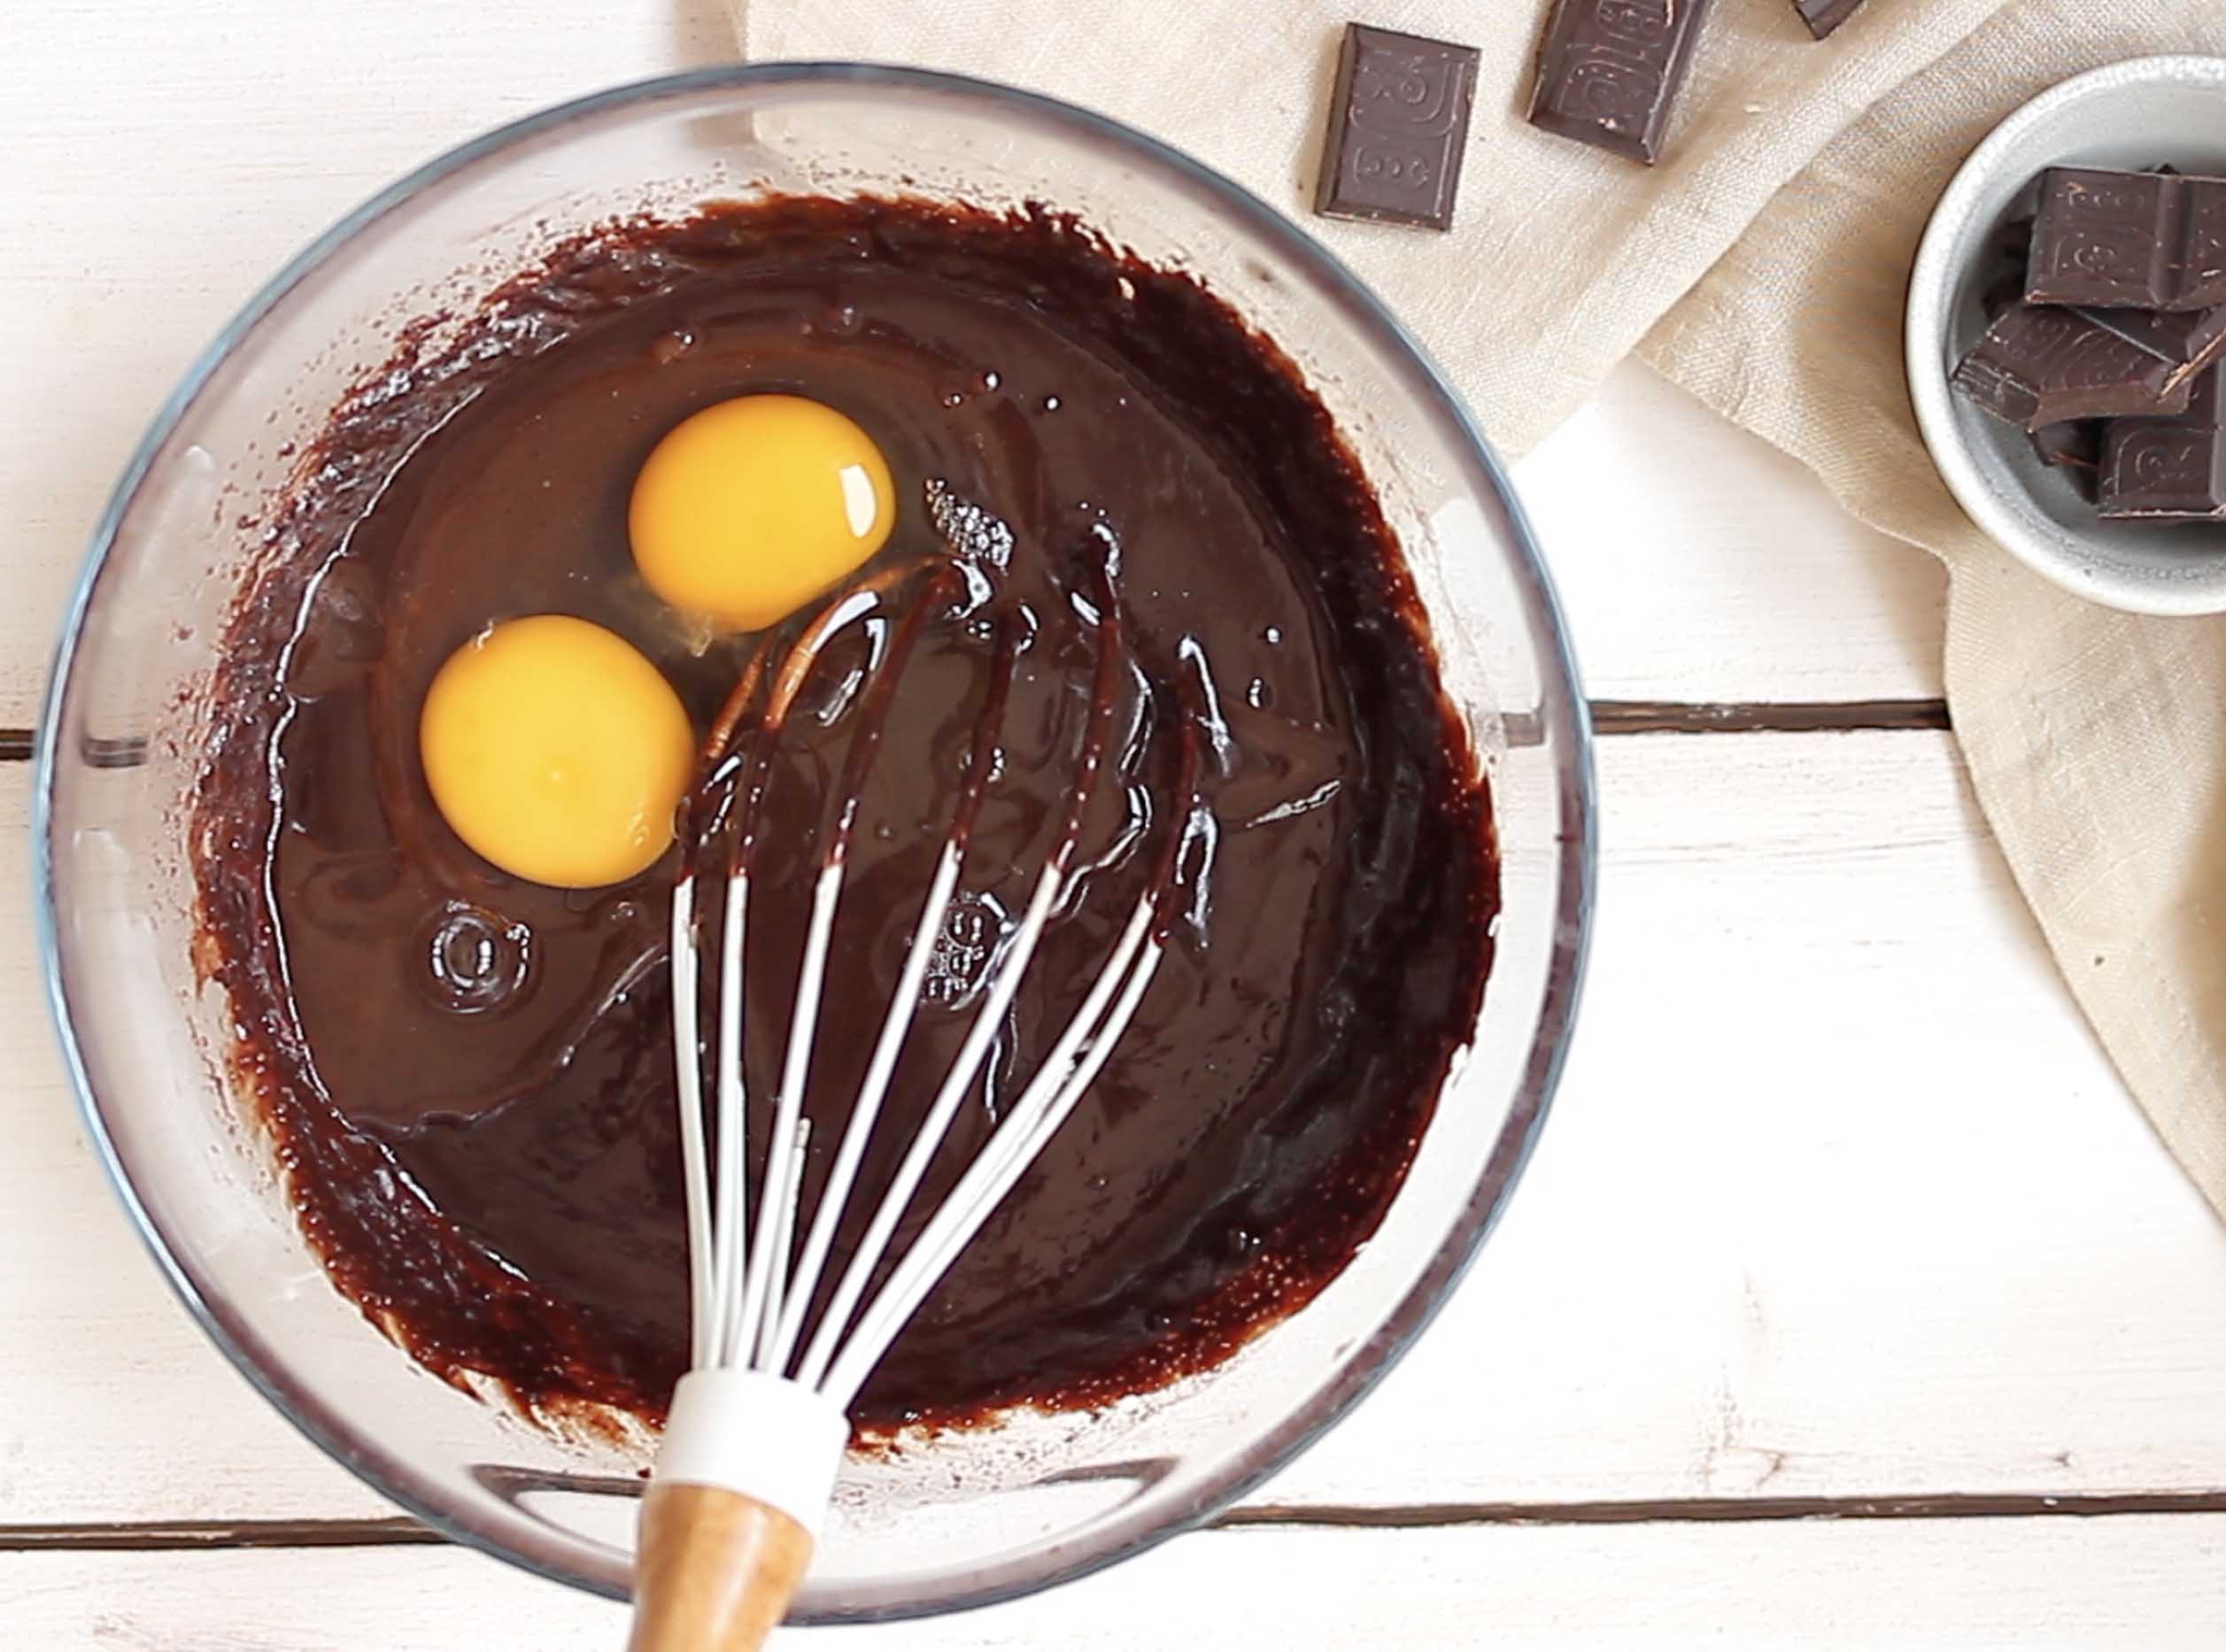 Torta cremosa al cioccolato senza farina - Step 3